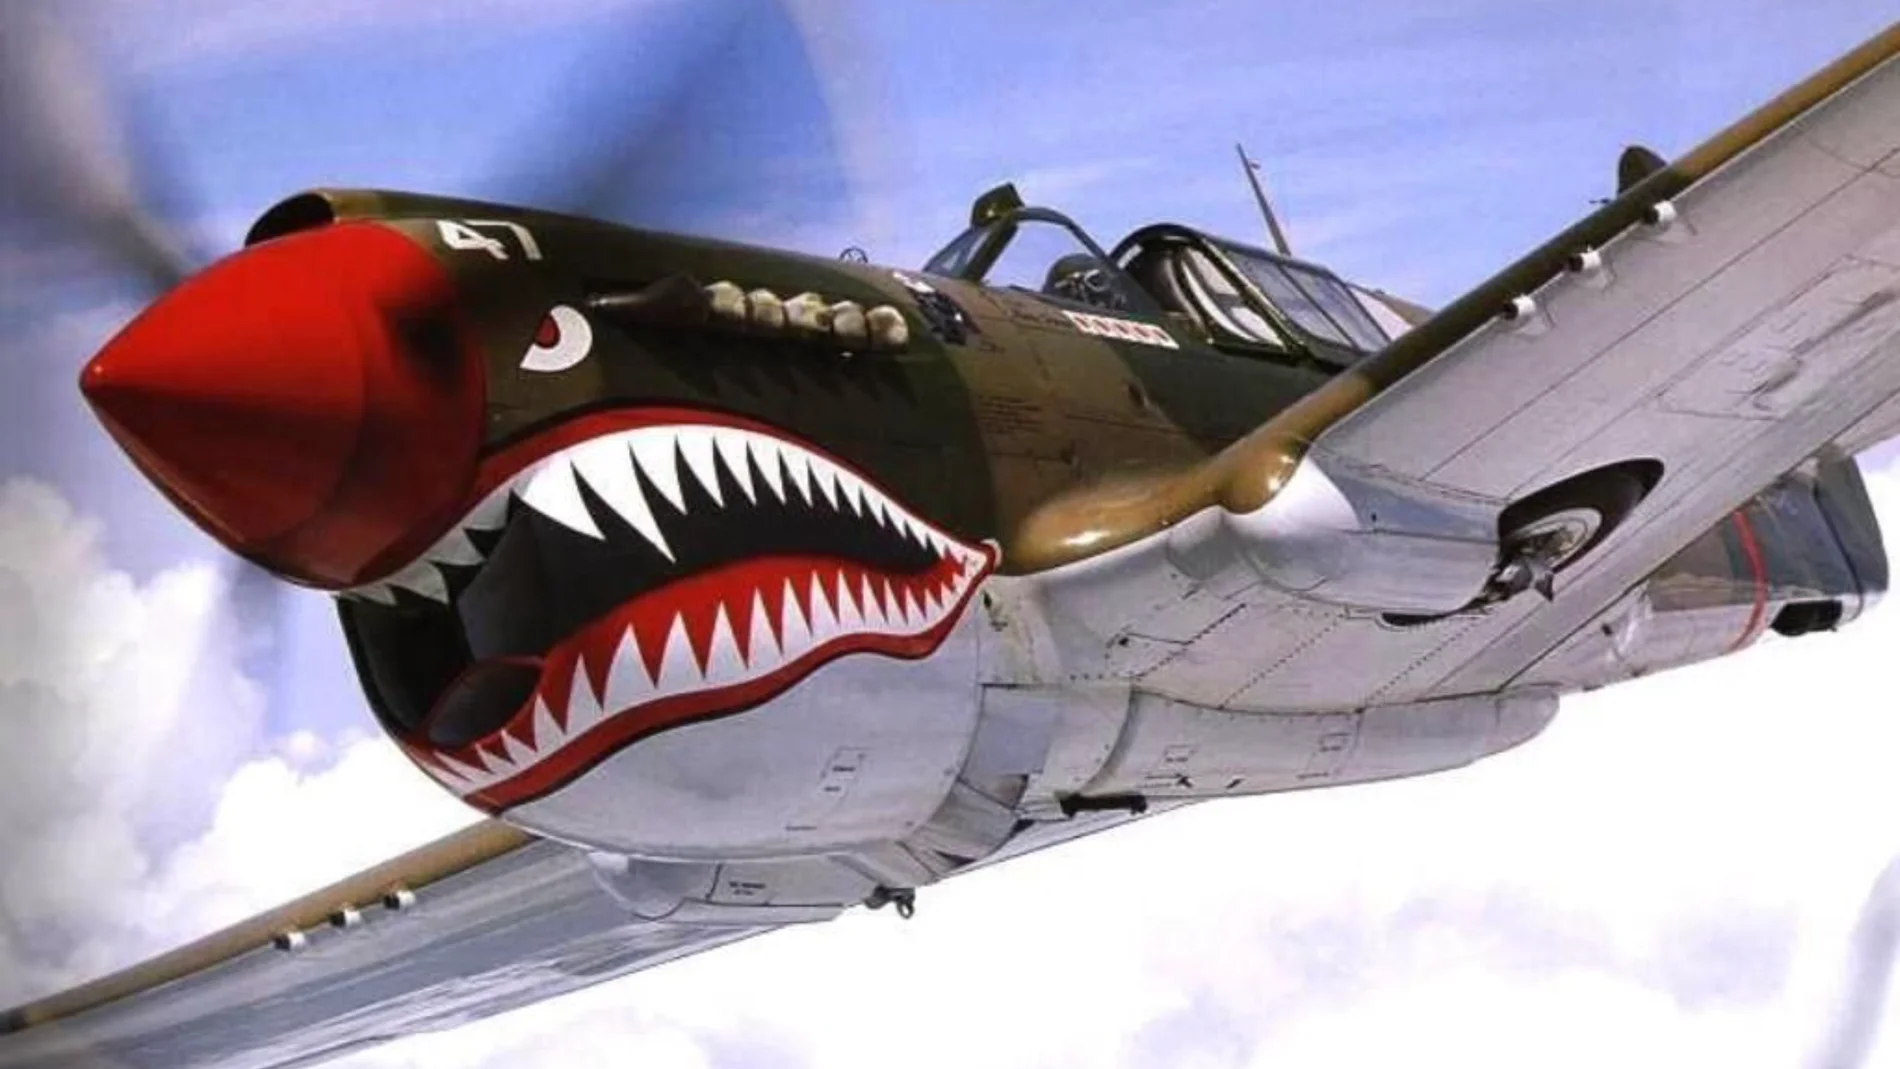 A día de hoy, es casi imposible encontrar un Curtiss P-40 con el diseño del tiburón